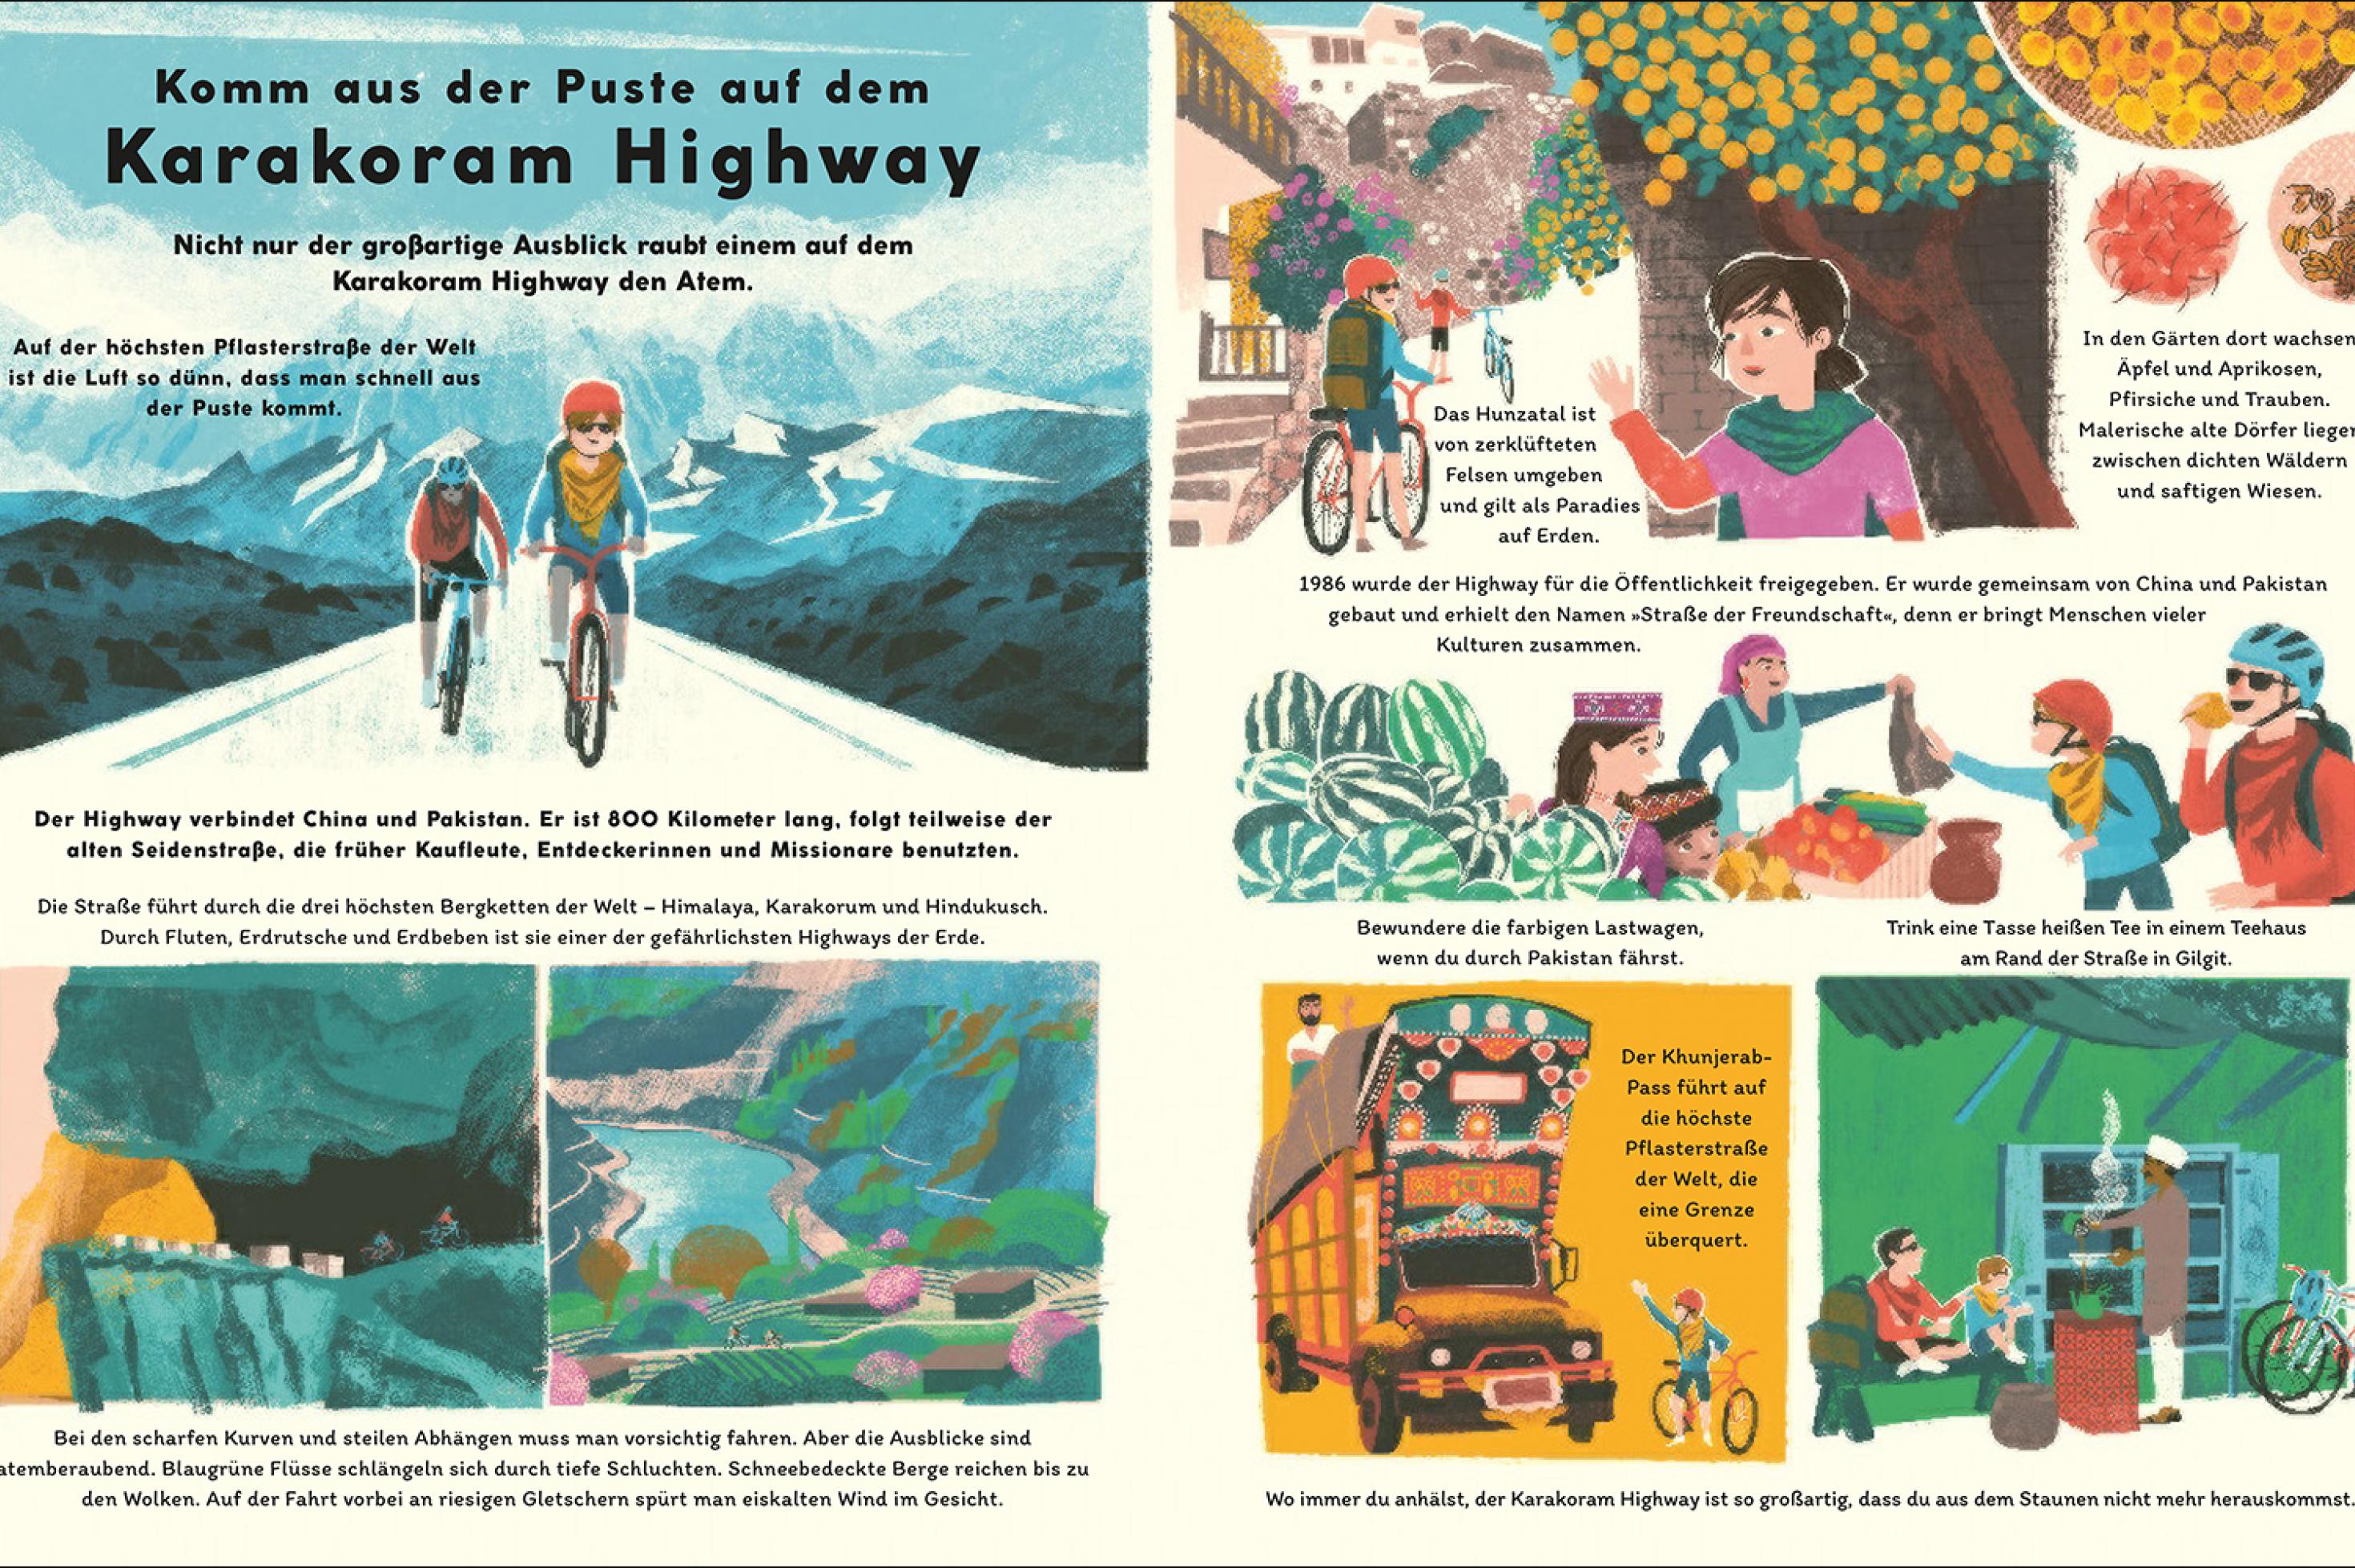 Eine Buchdoppelseite  zeigt Zeichnungen zu einer Fahrradtour von China nach Pakistan. Darüber steht: Komm aus der Puste auf dem Karakoram Highway.